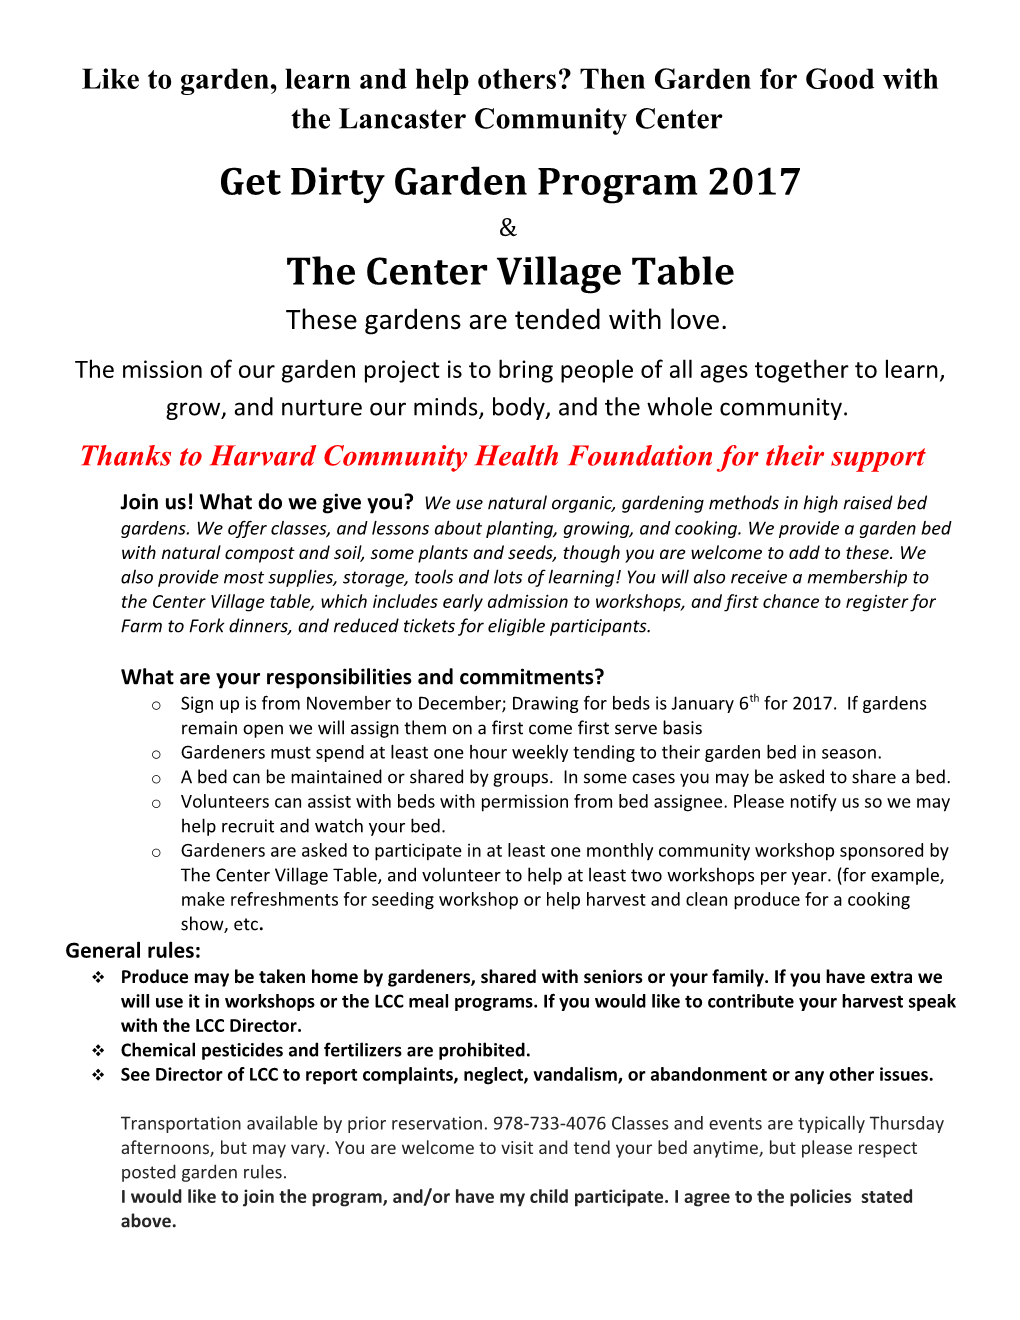 Get Dirty Garden Program 2017